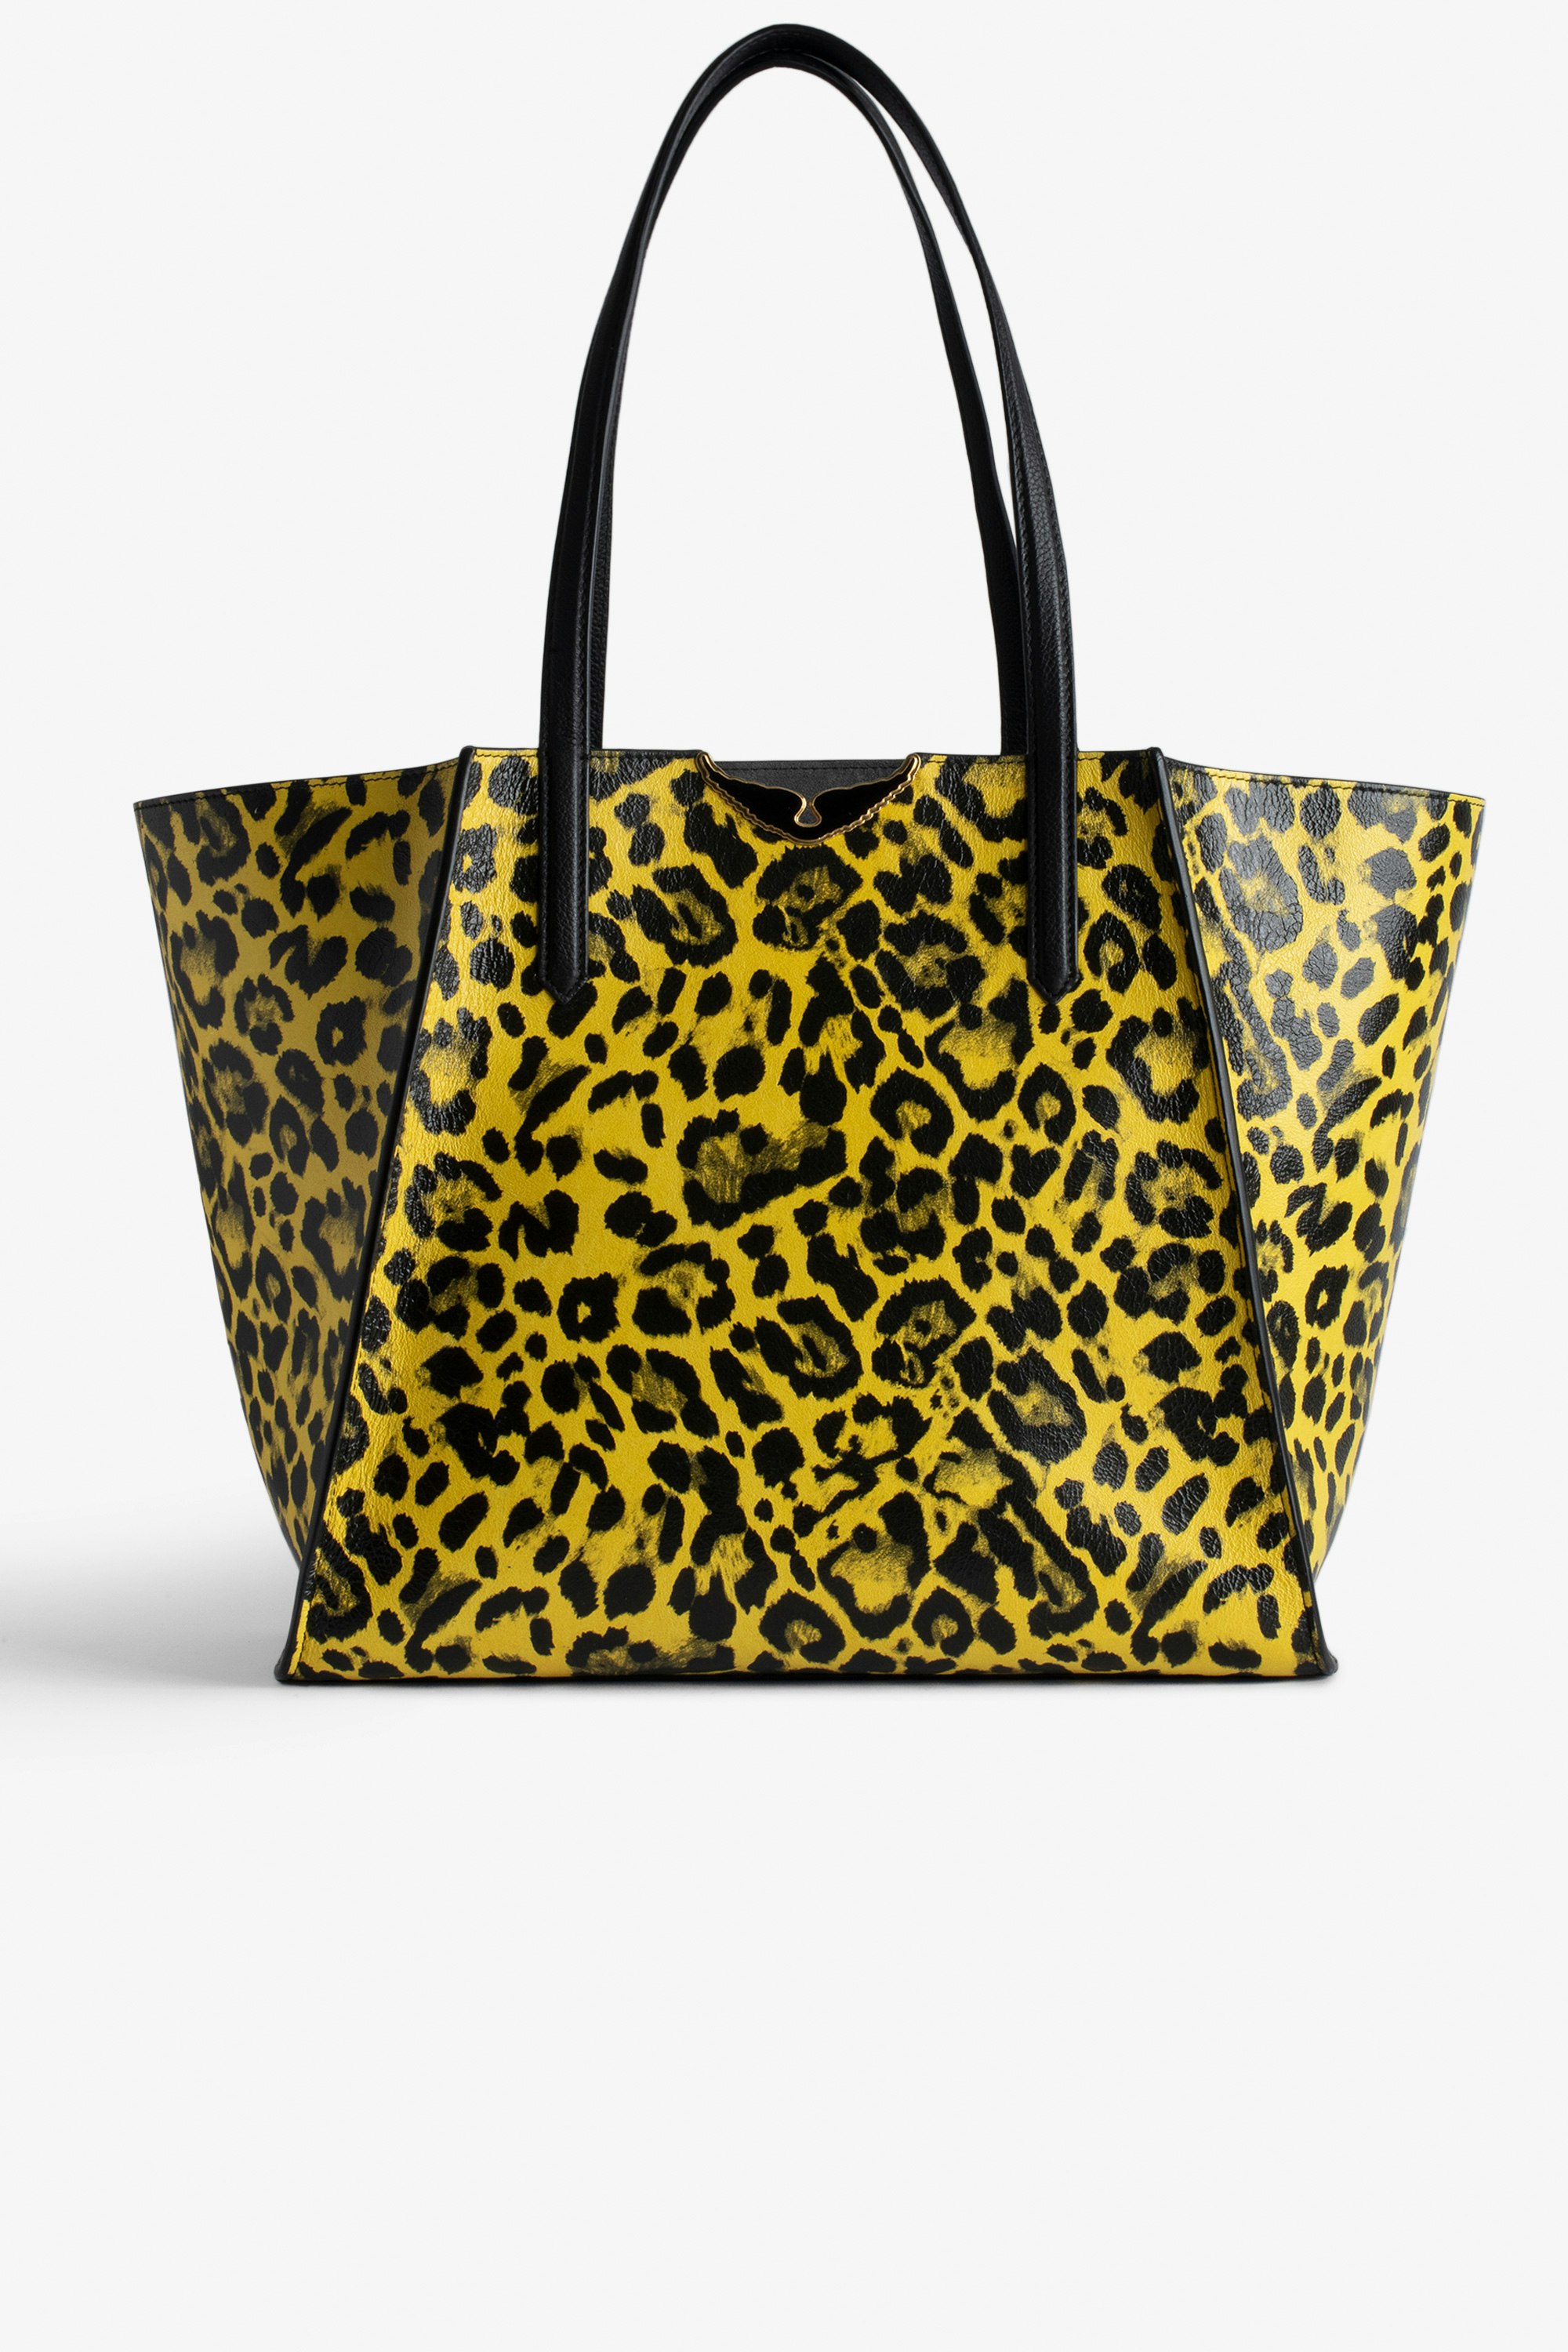 Bolso Le Borderline Leopardo - Bolso tote reversible amarillo de piel brillante con estampado de leopardo con asa metálica y alas para mujer.